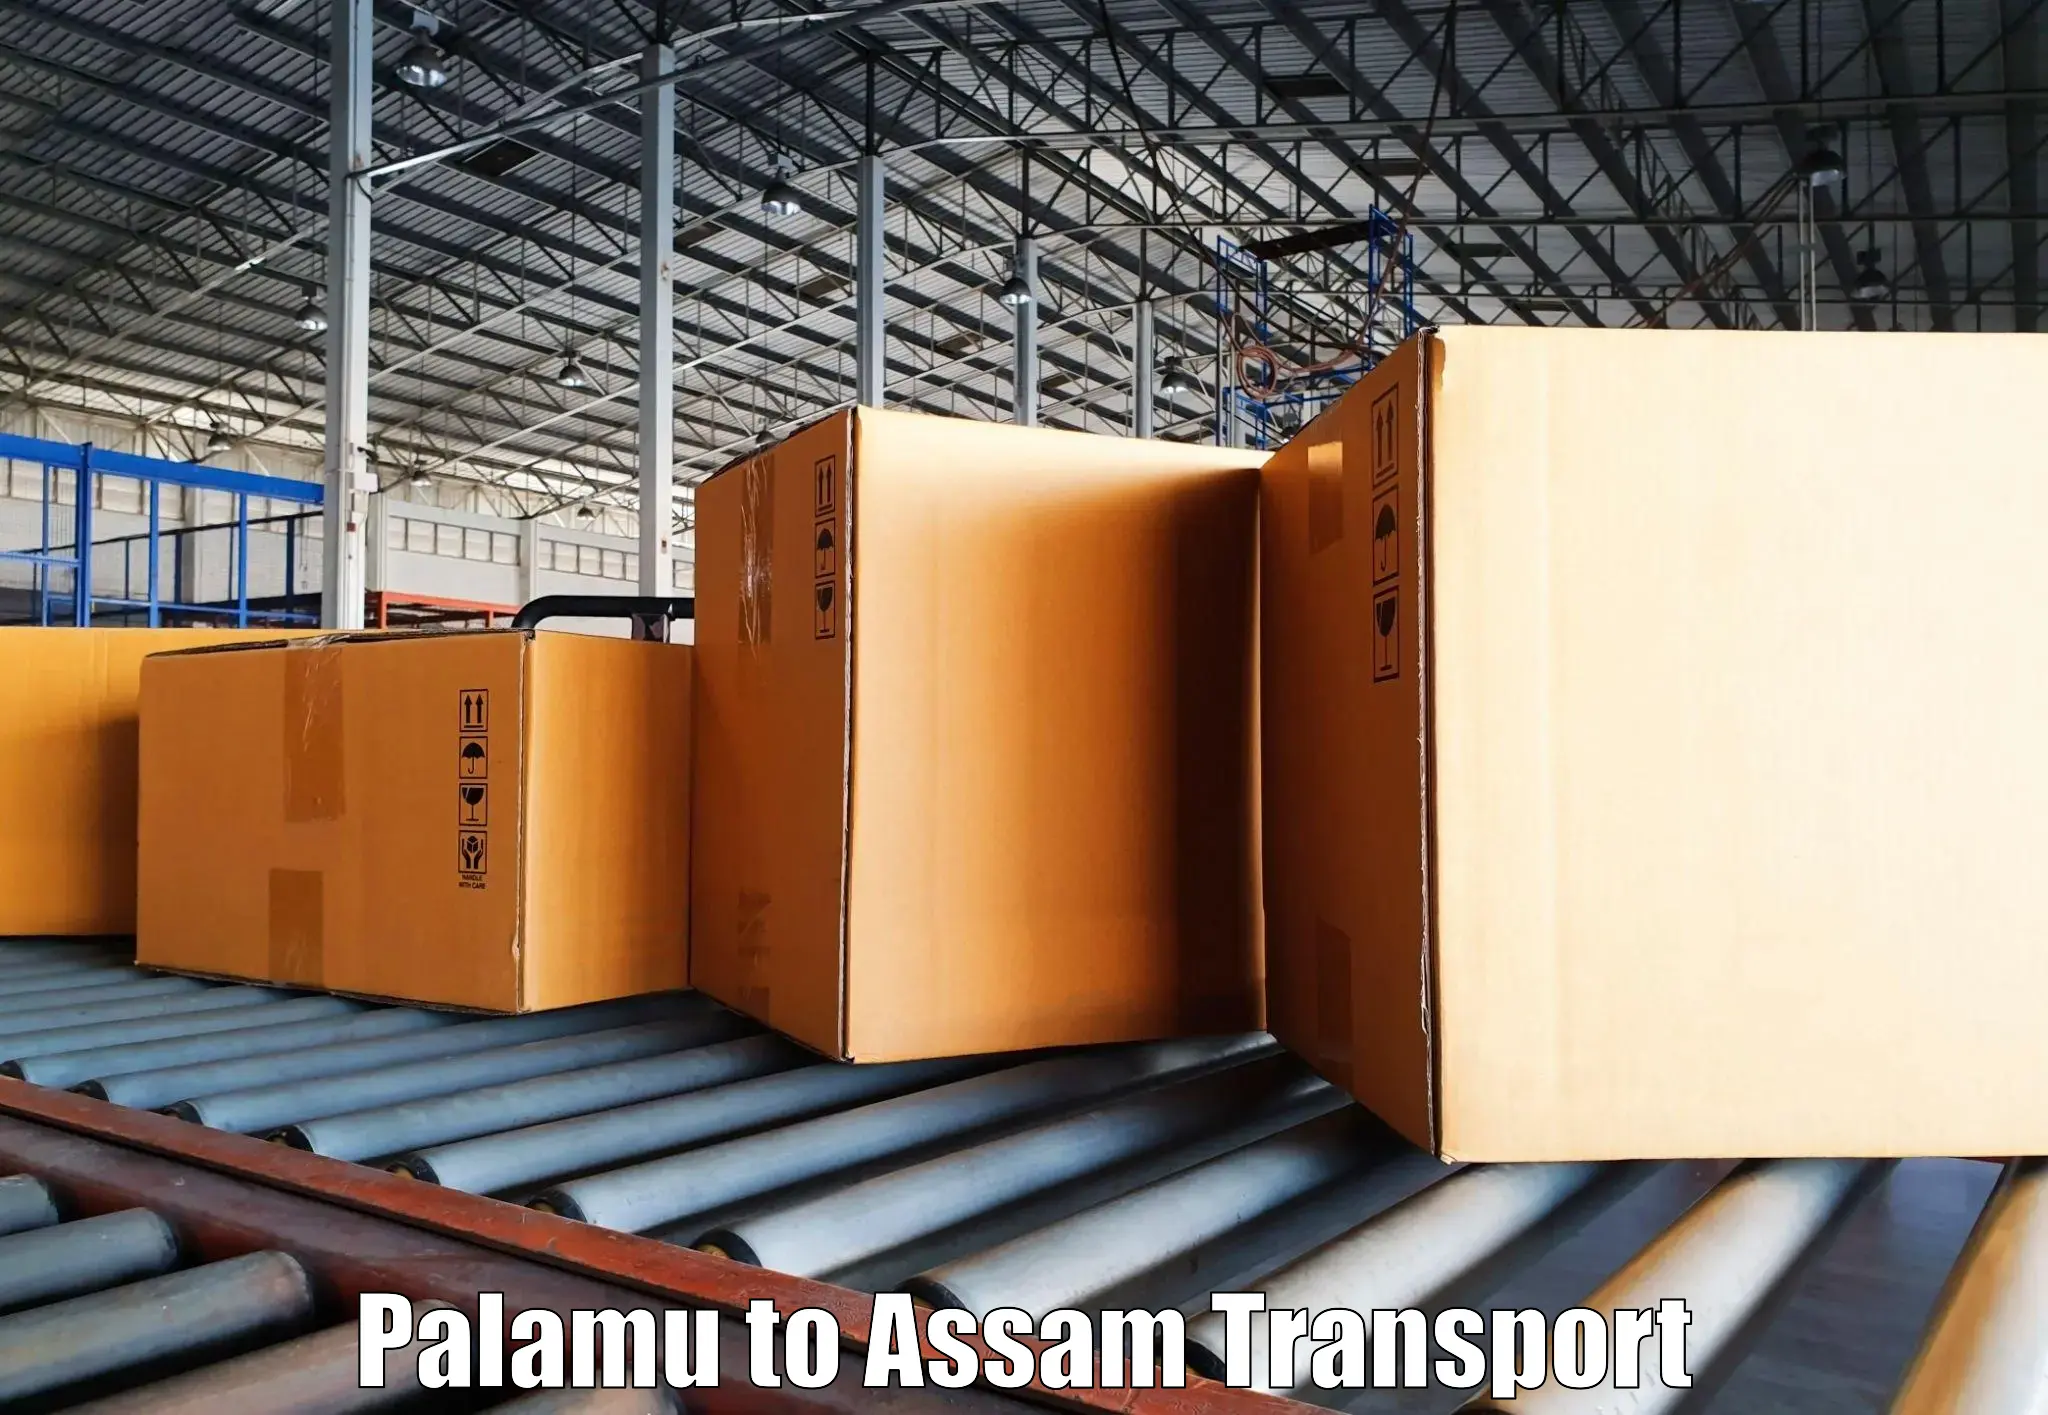 Nearest transport service Palamu to Mayang